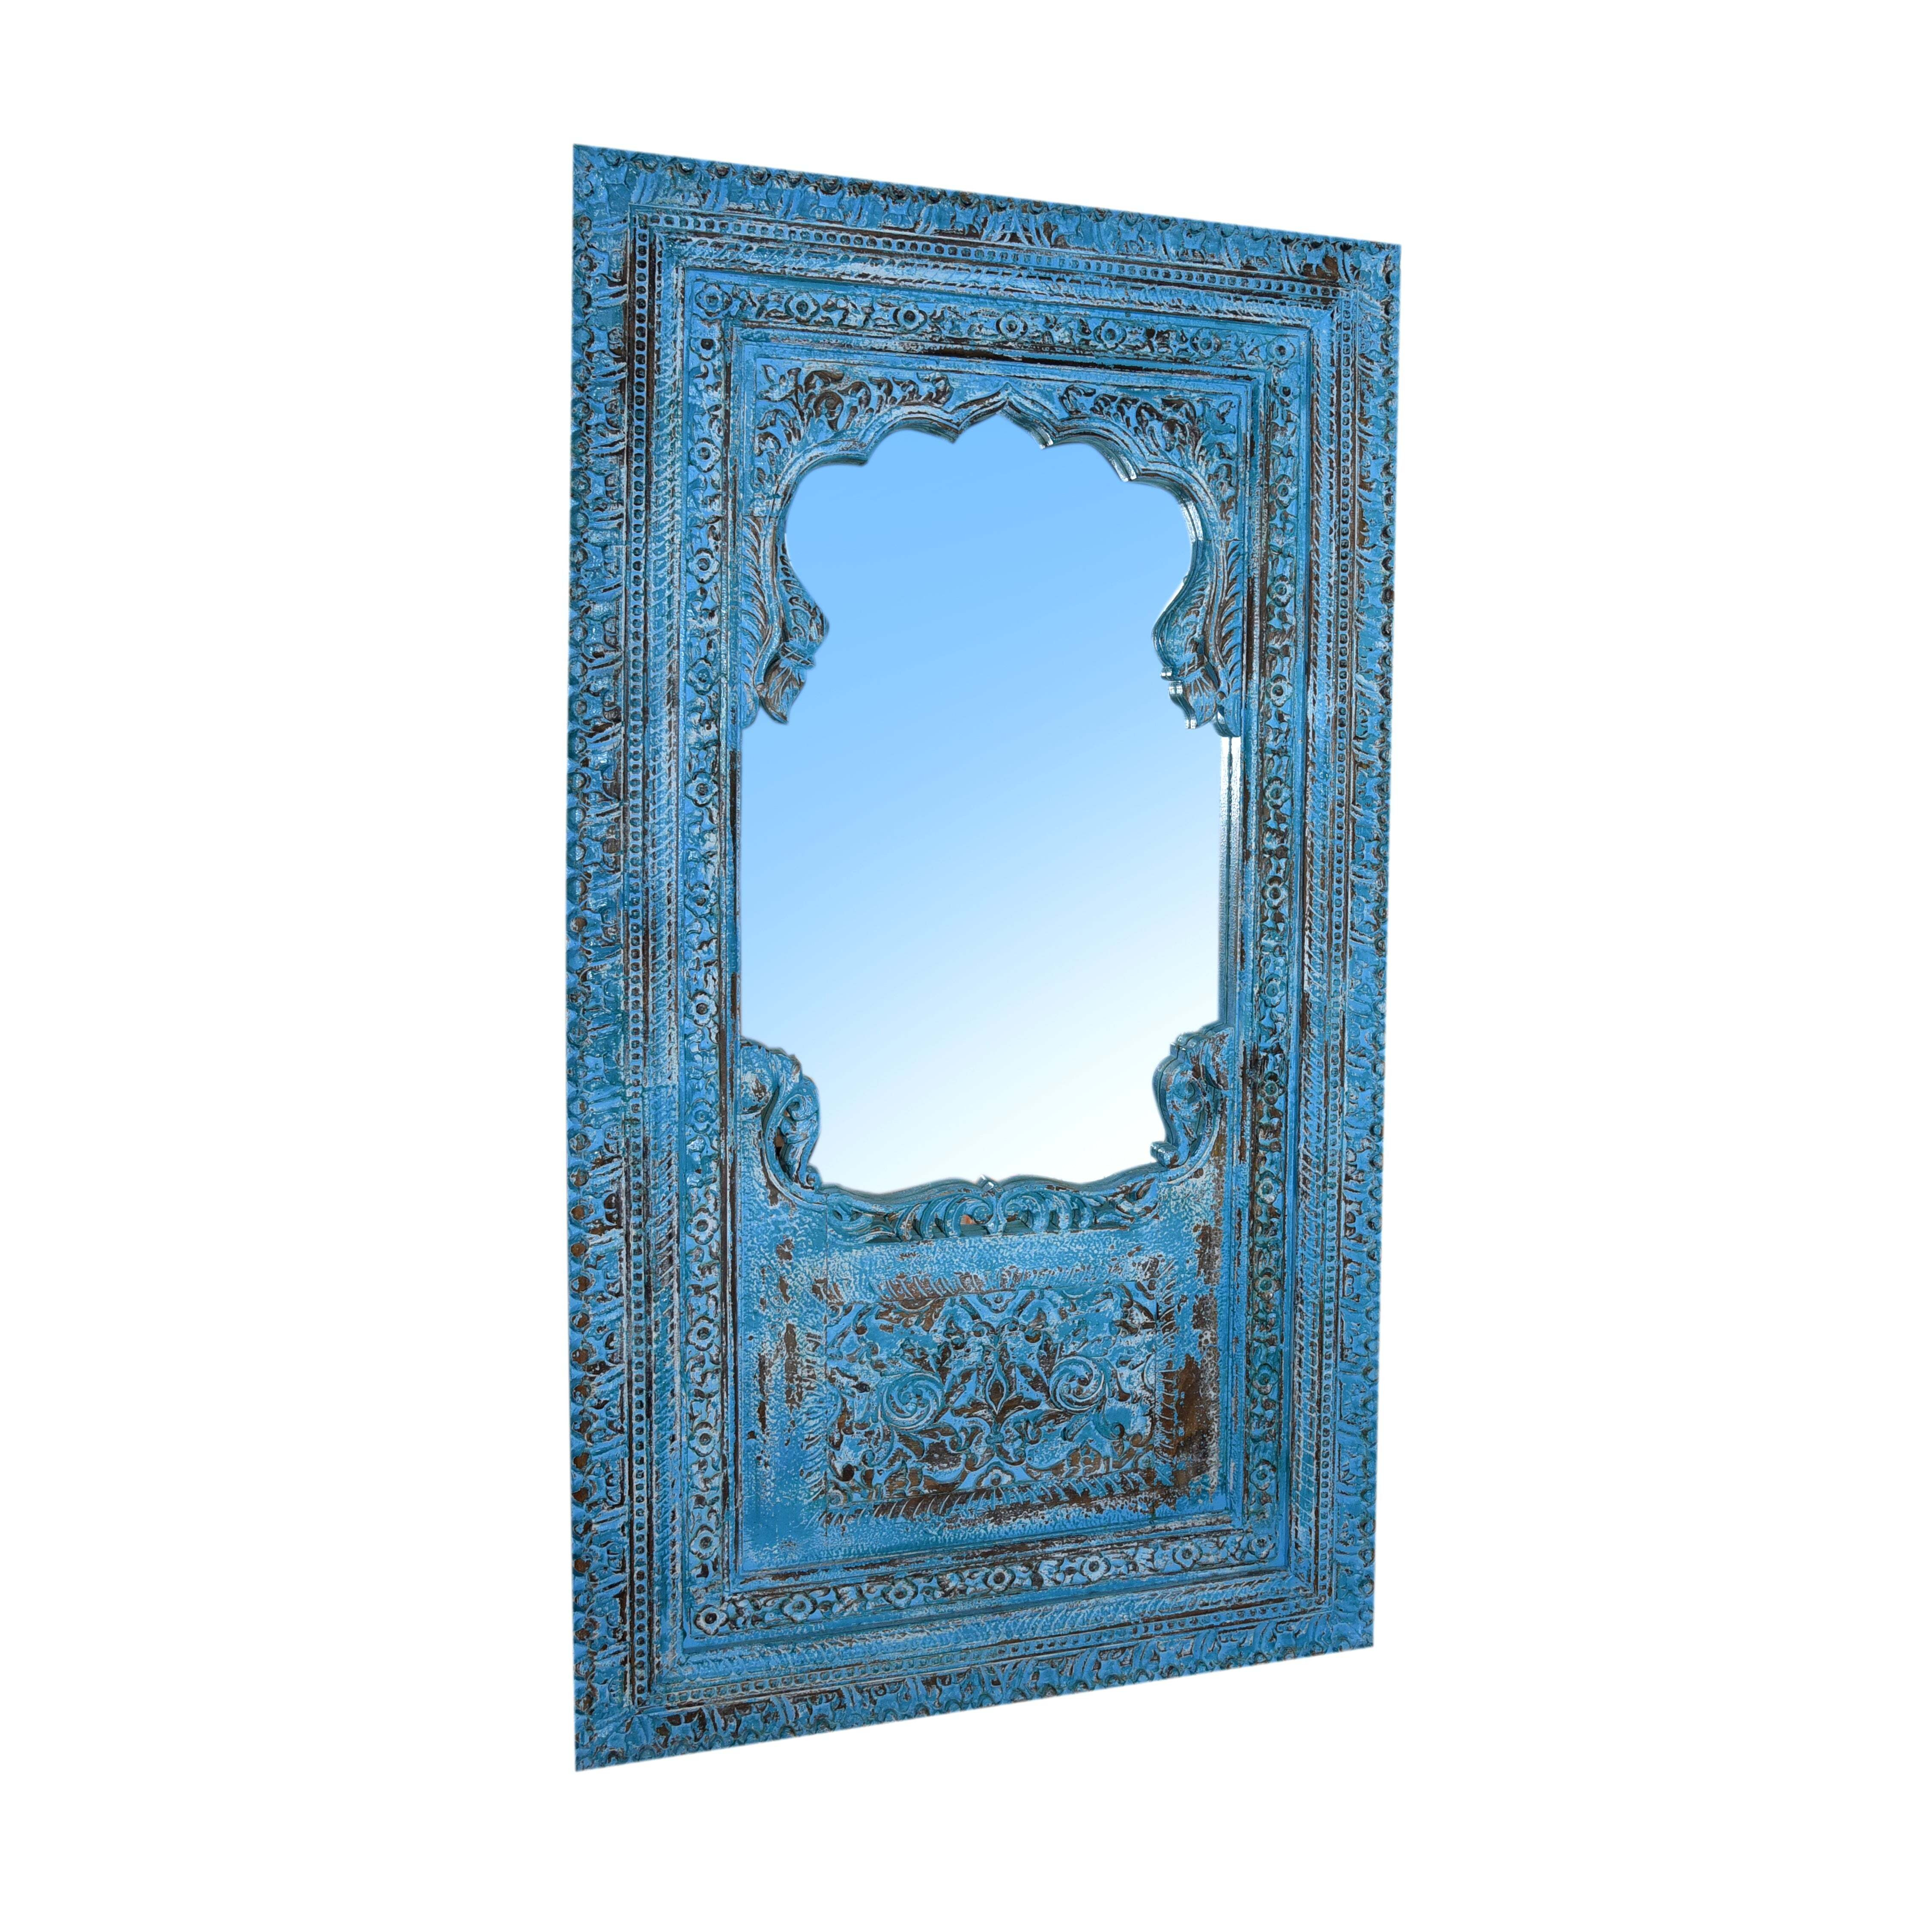 Decorative Door with Mirror - image 1